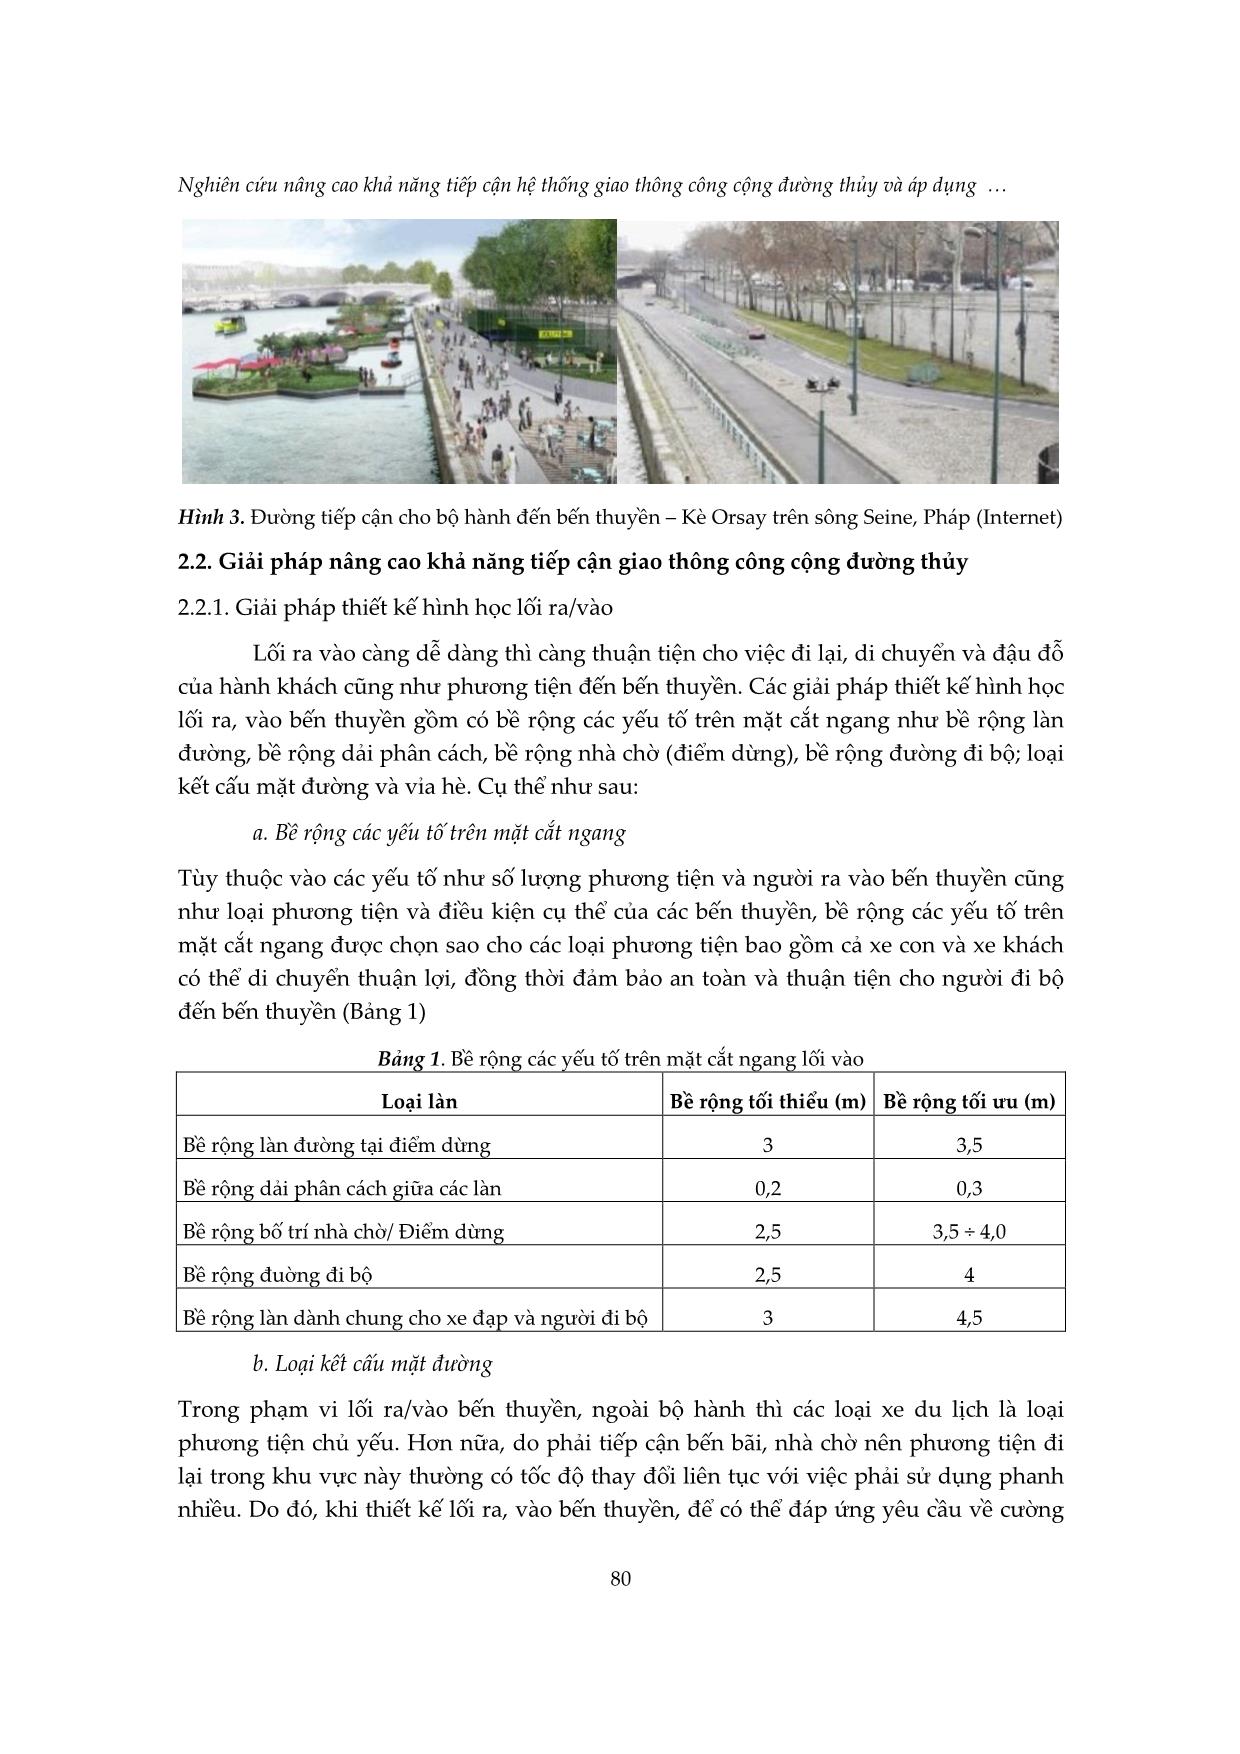 Nghiên cứu nâng cao khả năng tiếp cận hệ thống giao thông công cộng đường thủy và áp dụng cho bến thuyền sông Hương, thành phố Huế trang 4